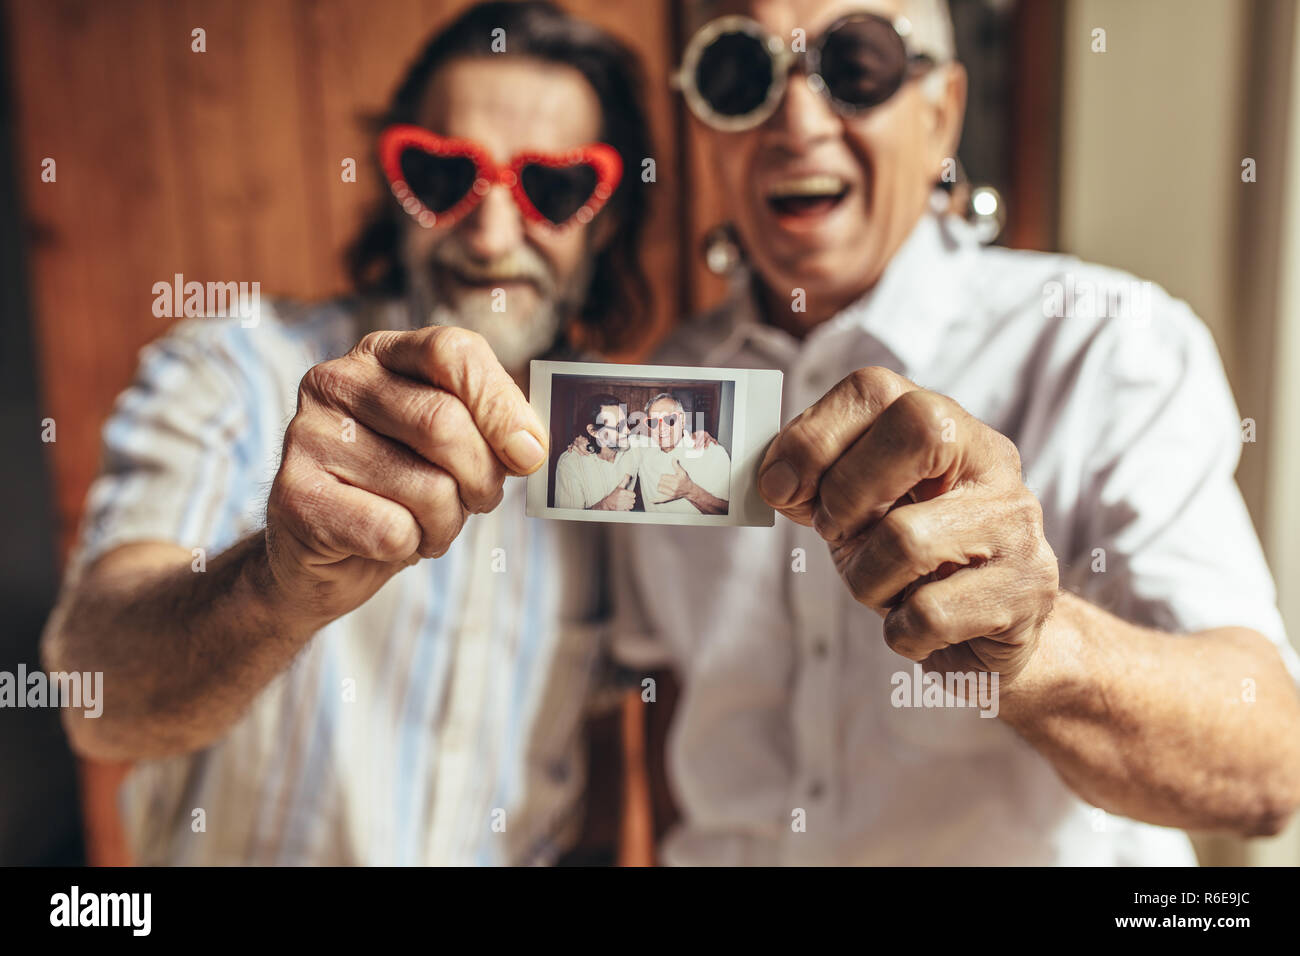 Zwei ältere männliche Freunde mit Party Sonnenbrille ihr Bild angezeigt. Ältere Menschen, die tolle Zeit zusammen. Fokus auf das Bild in der Hand der alten Menschen Stockfoto